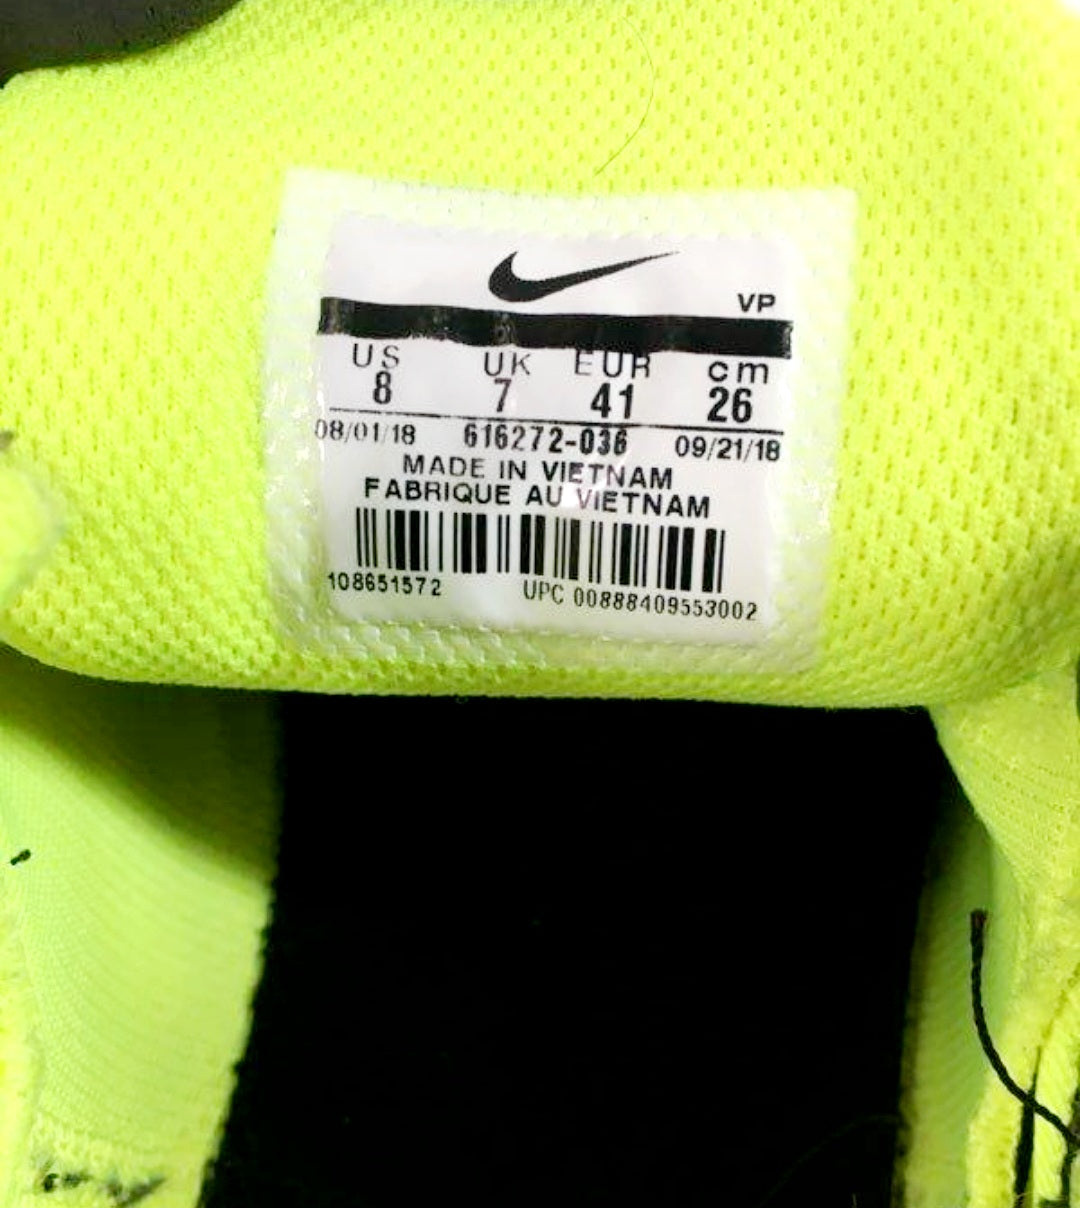 Men's Nike Reax 8 Training Shoes Black/Volt (Sz 8)